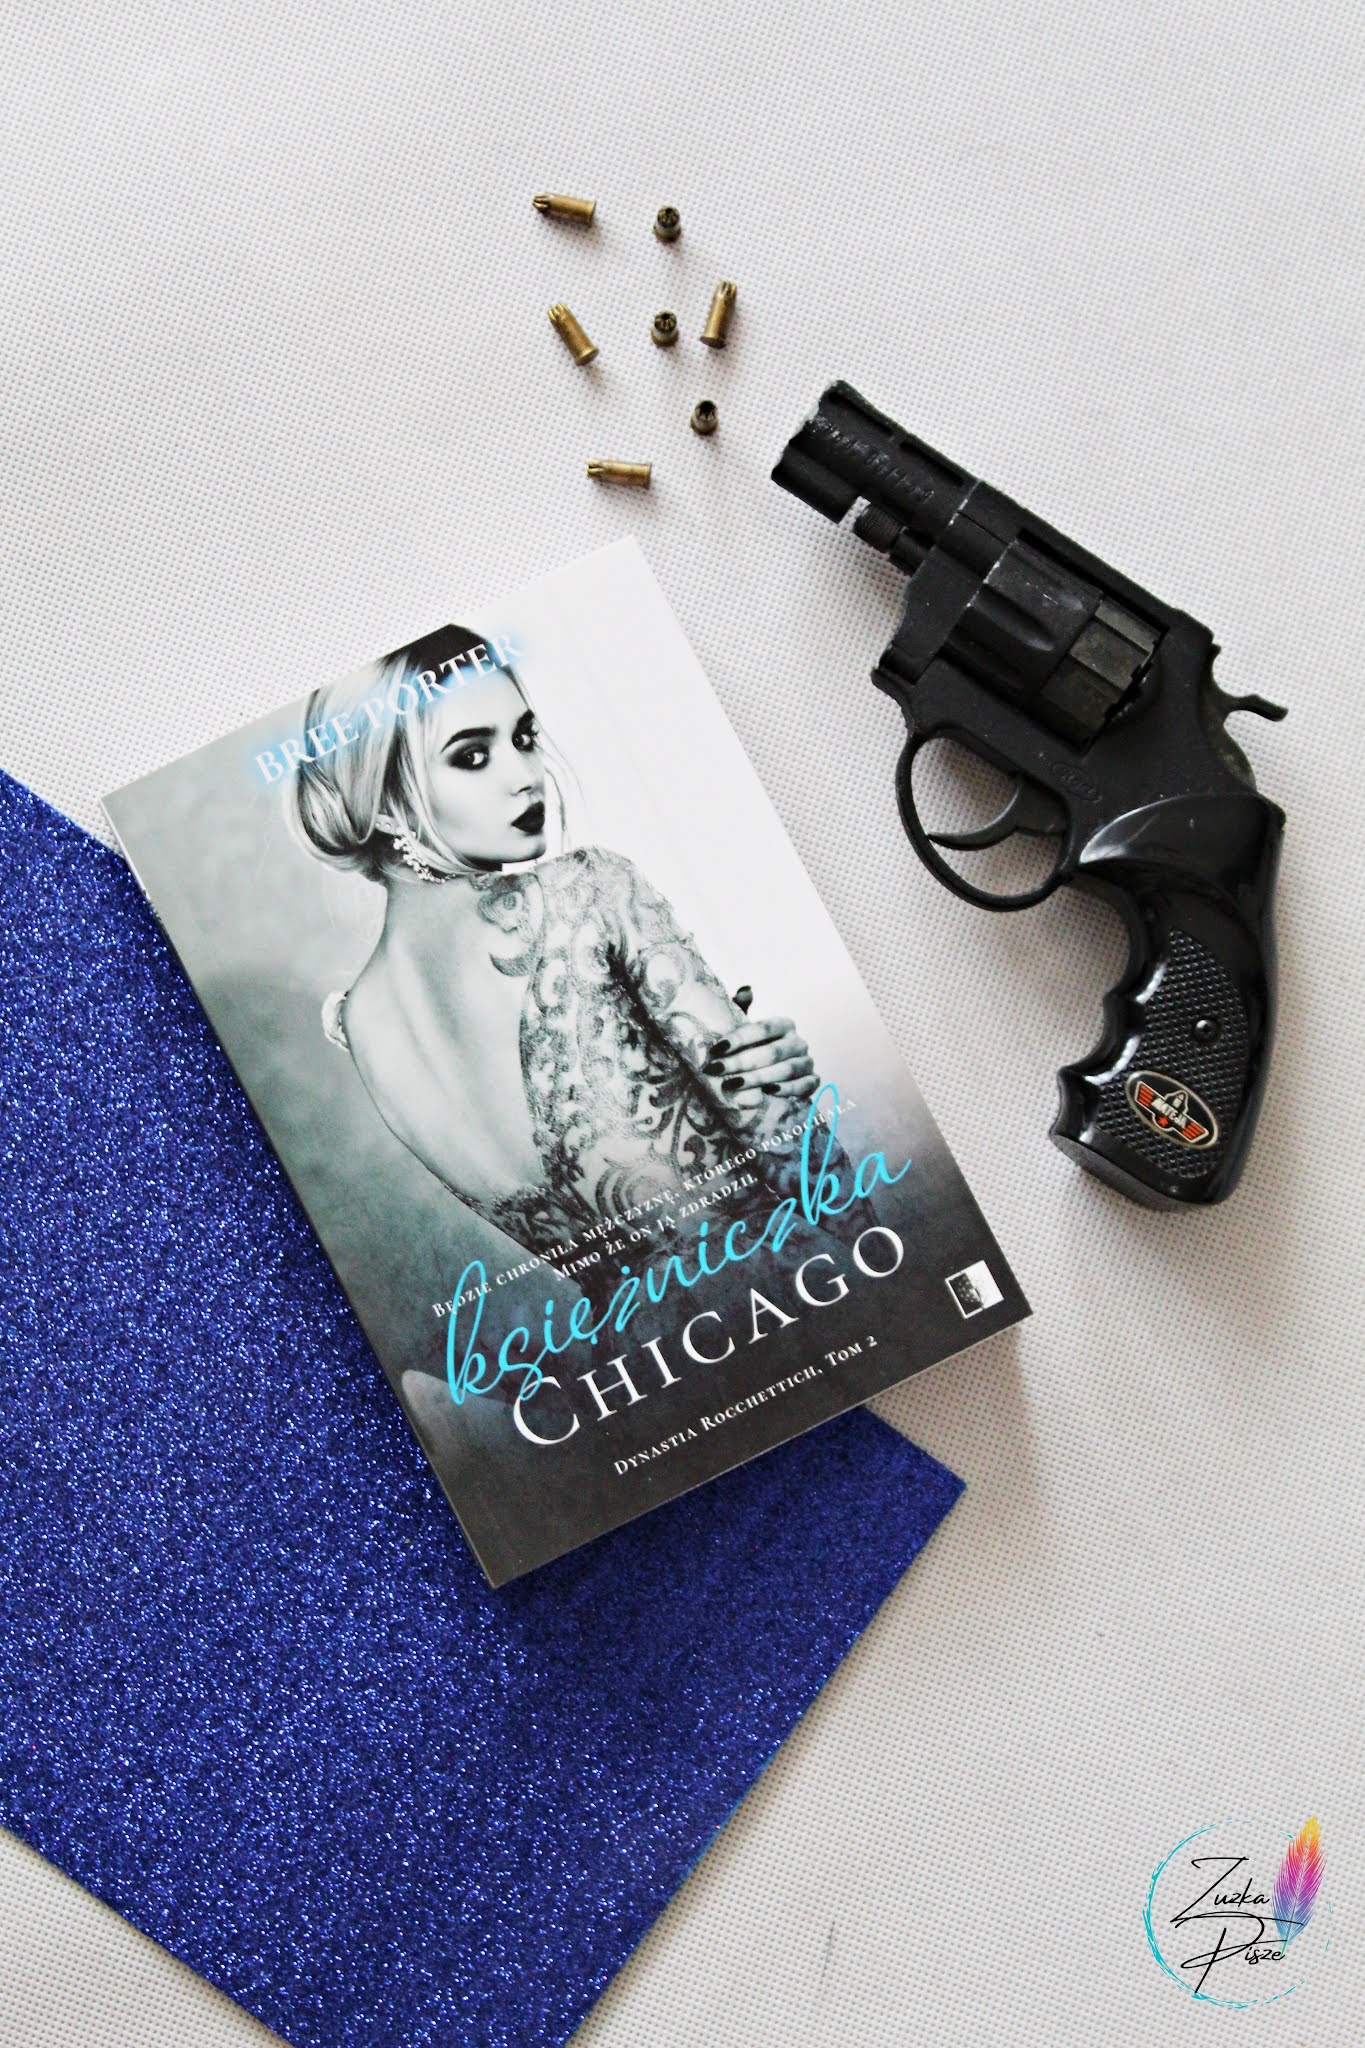 Bree Porter "Księżniczka Chicago" - patronacka recenzja książki